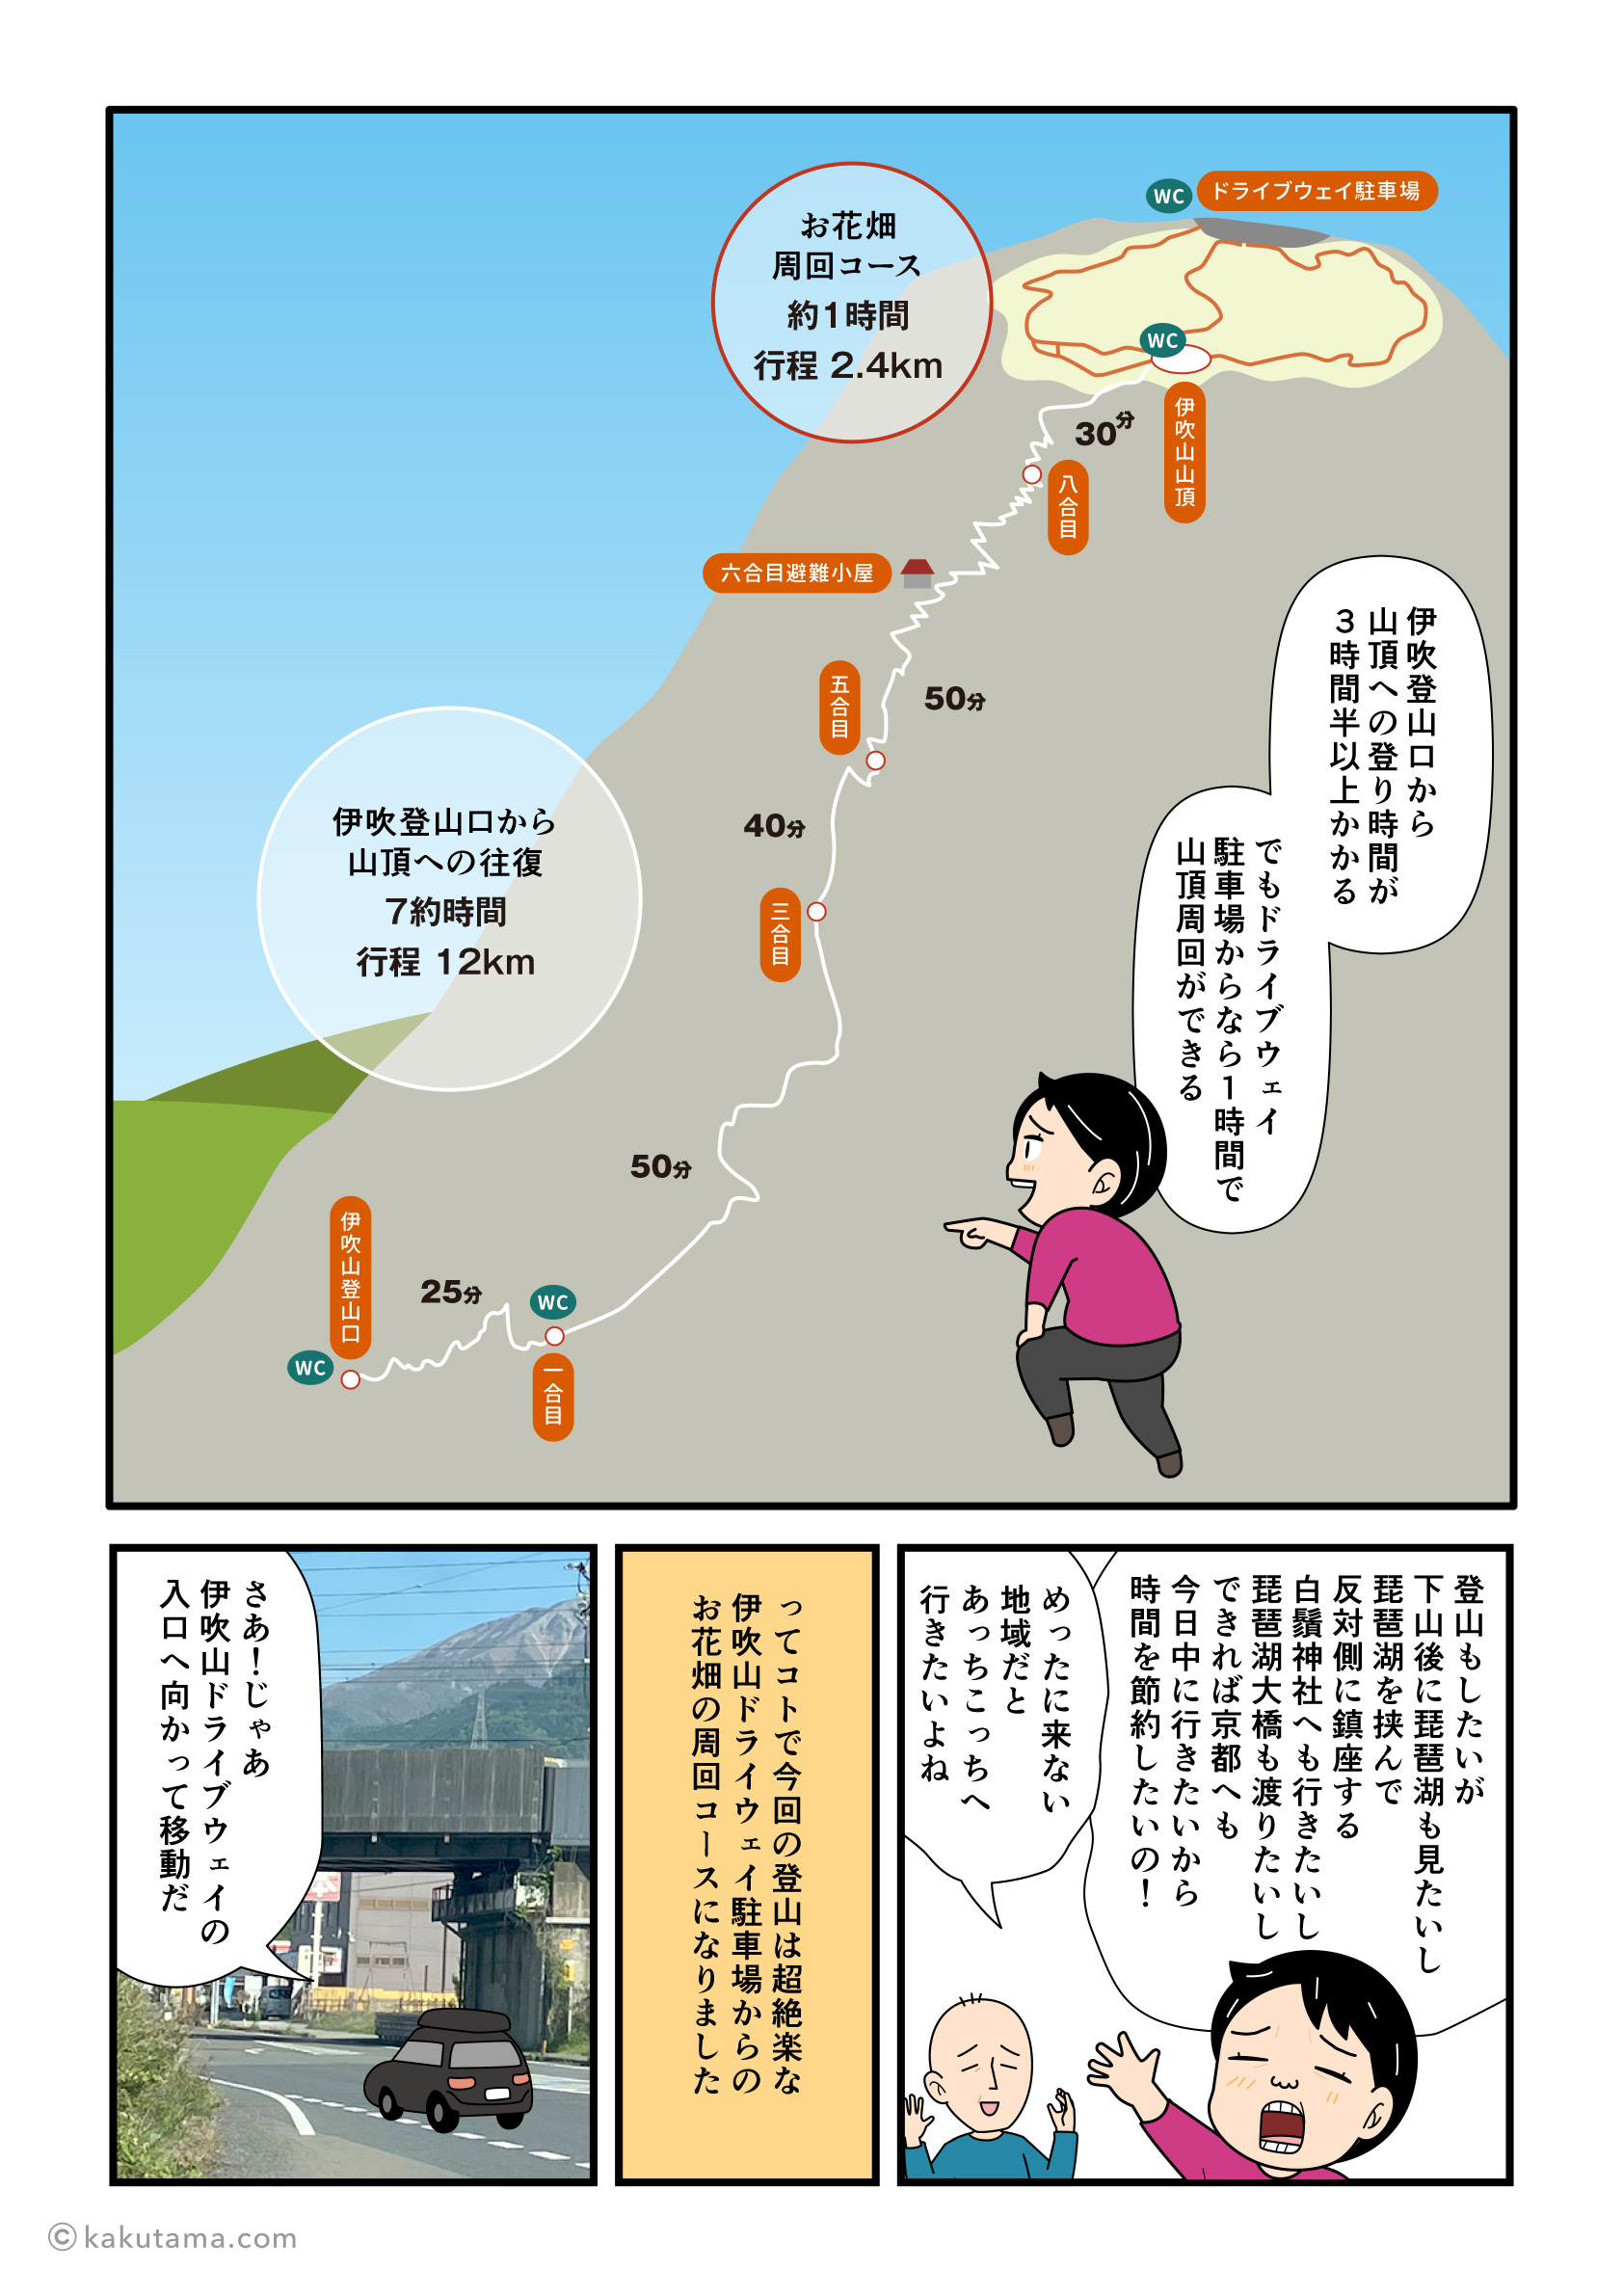 伊吹山への登山コースを描いた登山漫画